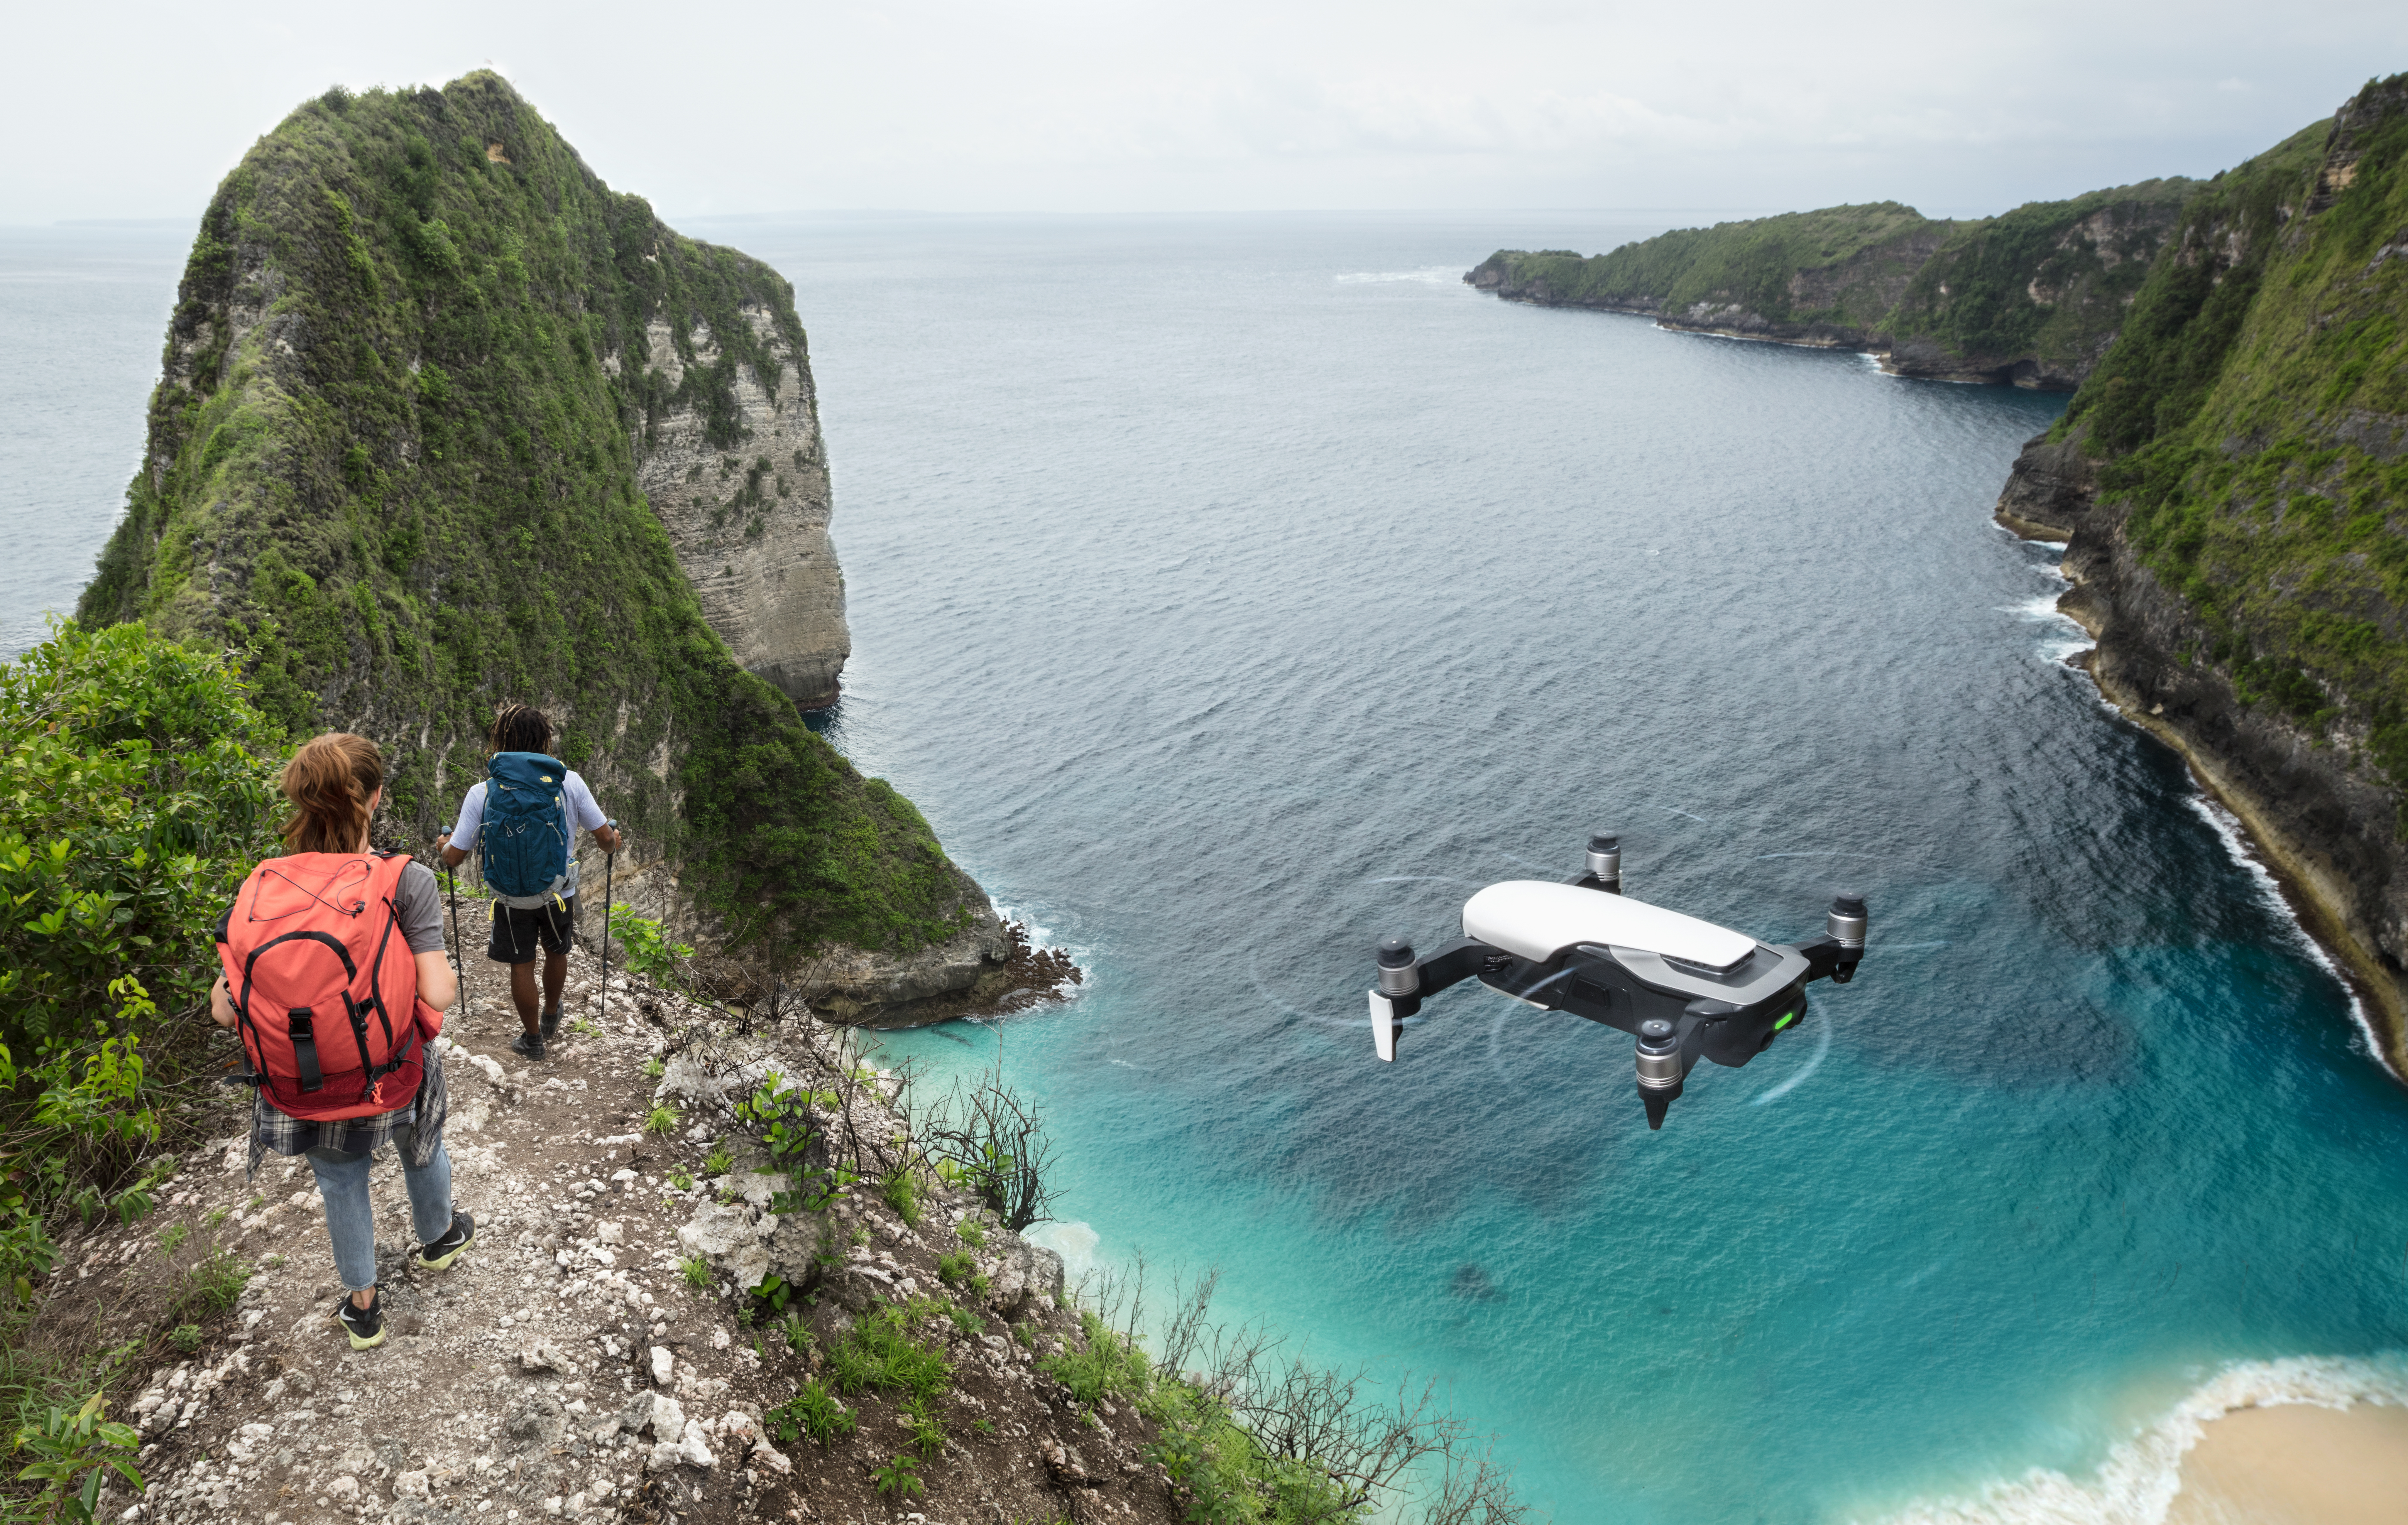 dji mavic air drones 2018